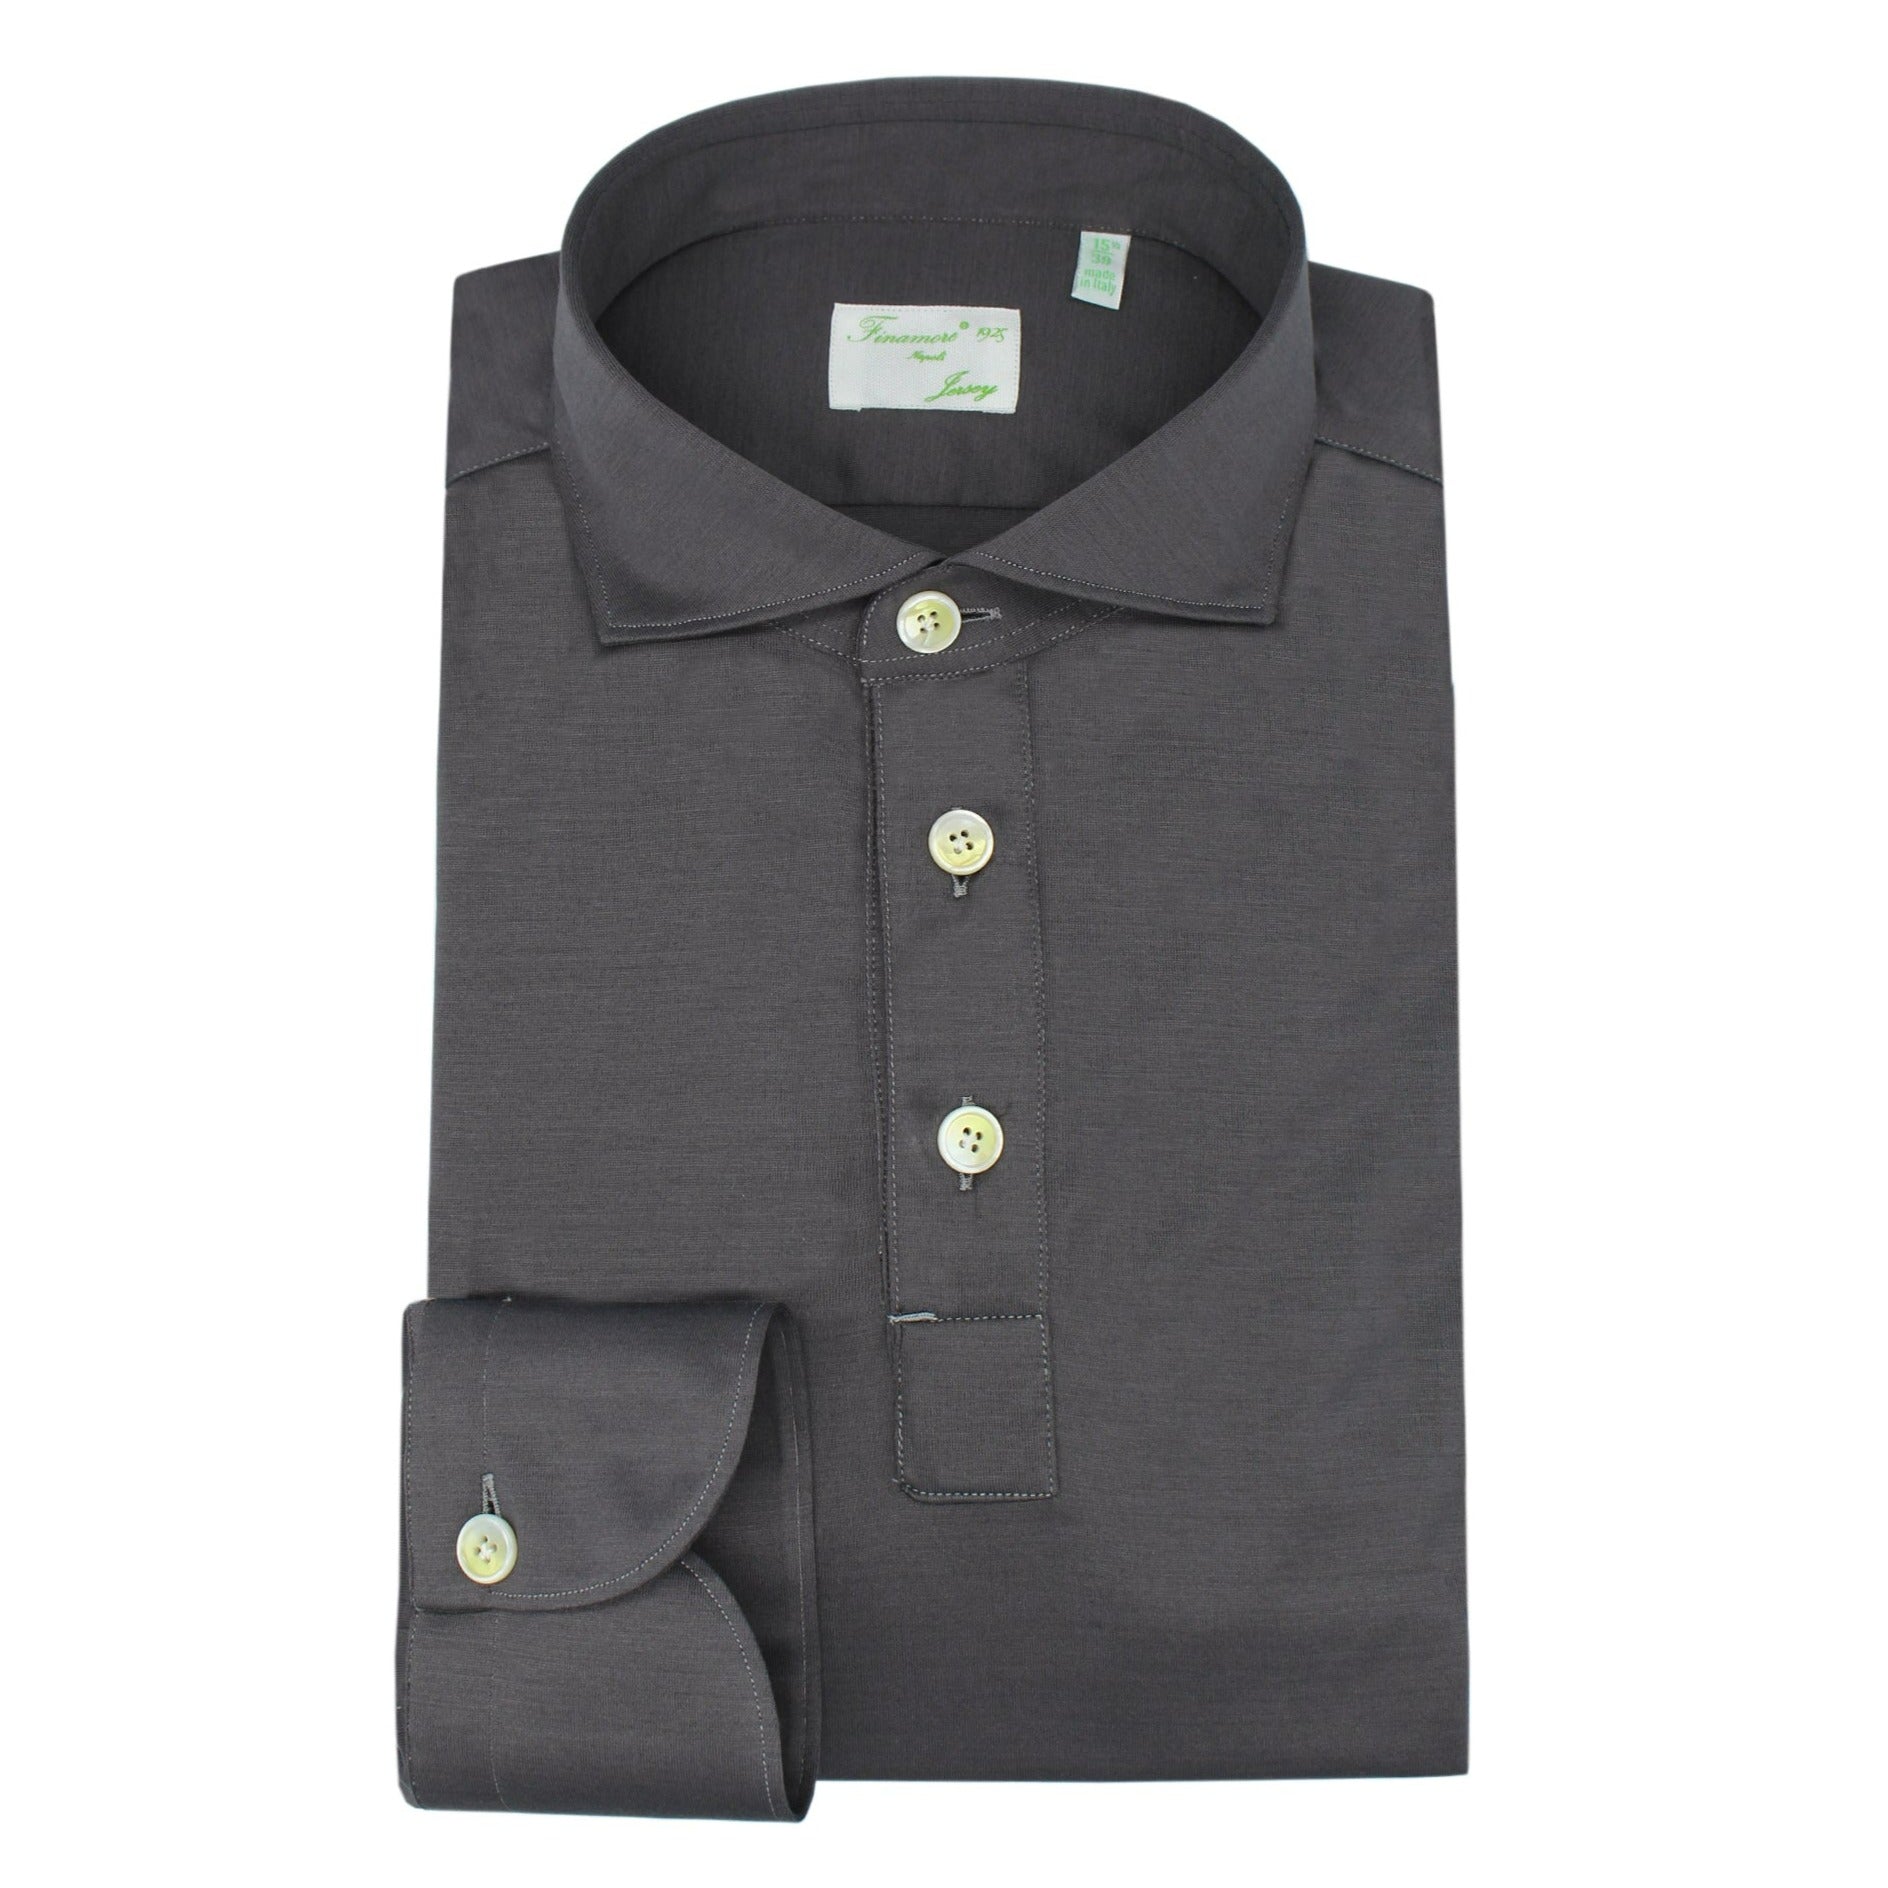 Orlndo polo shirt in gray cotton jersey